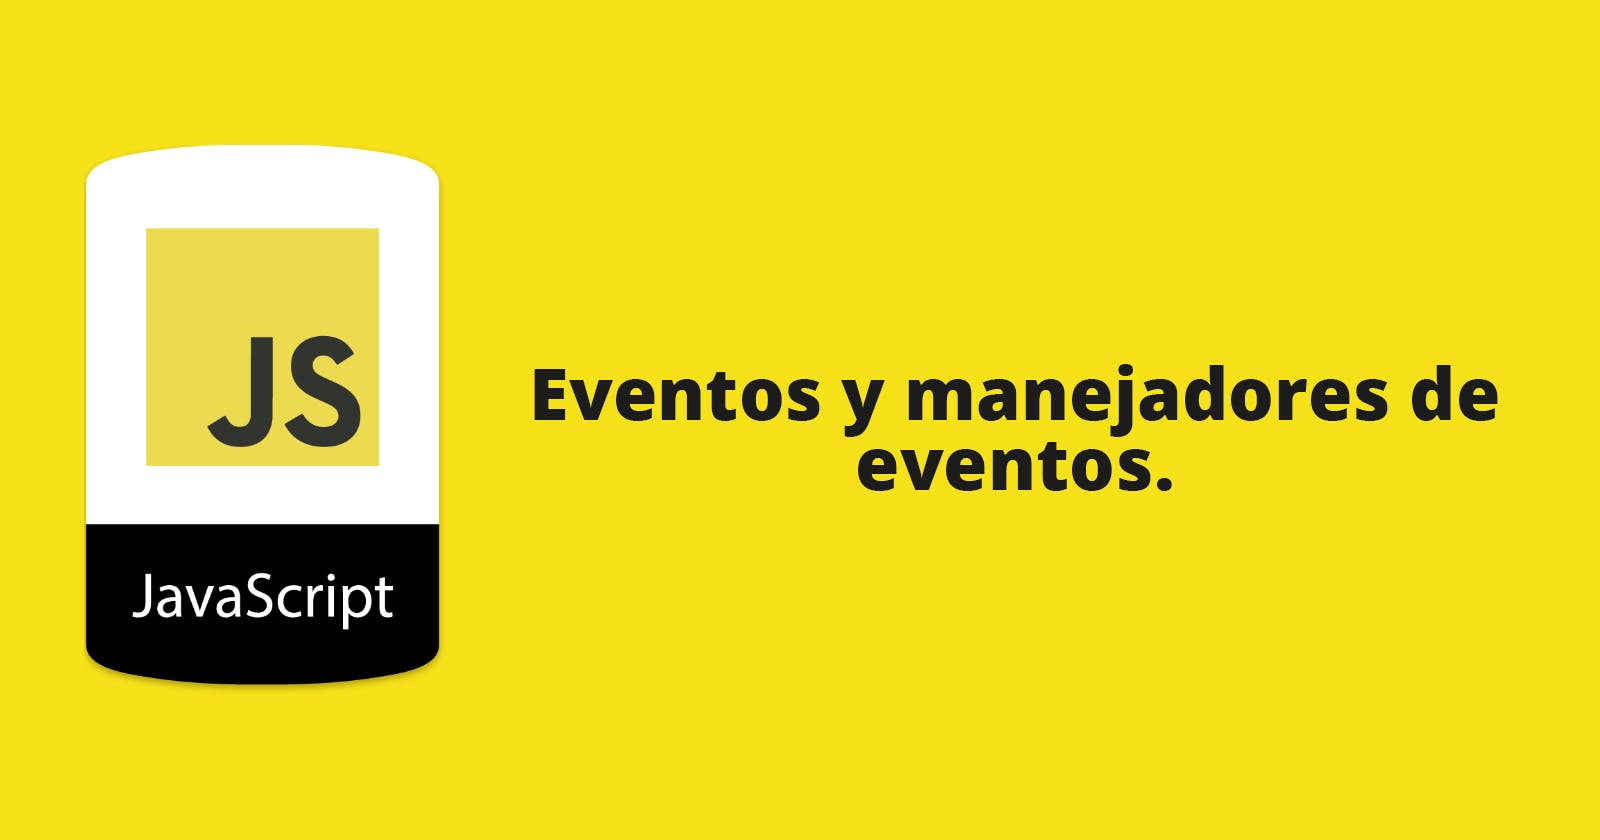 Eventos y manejadores de eventos en JavaScript.